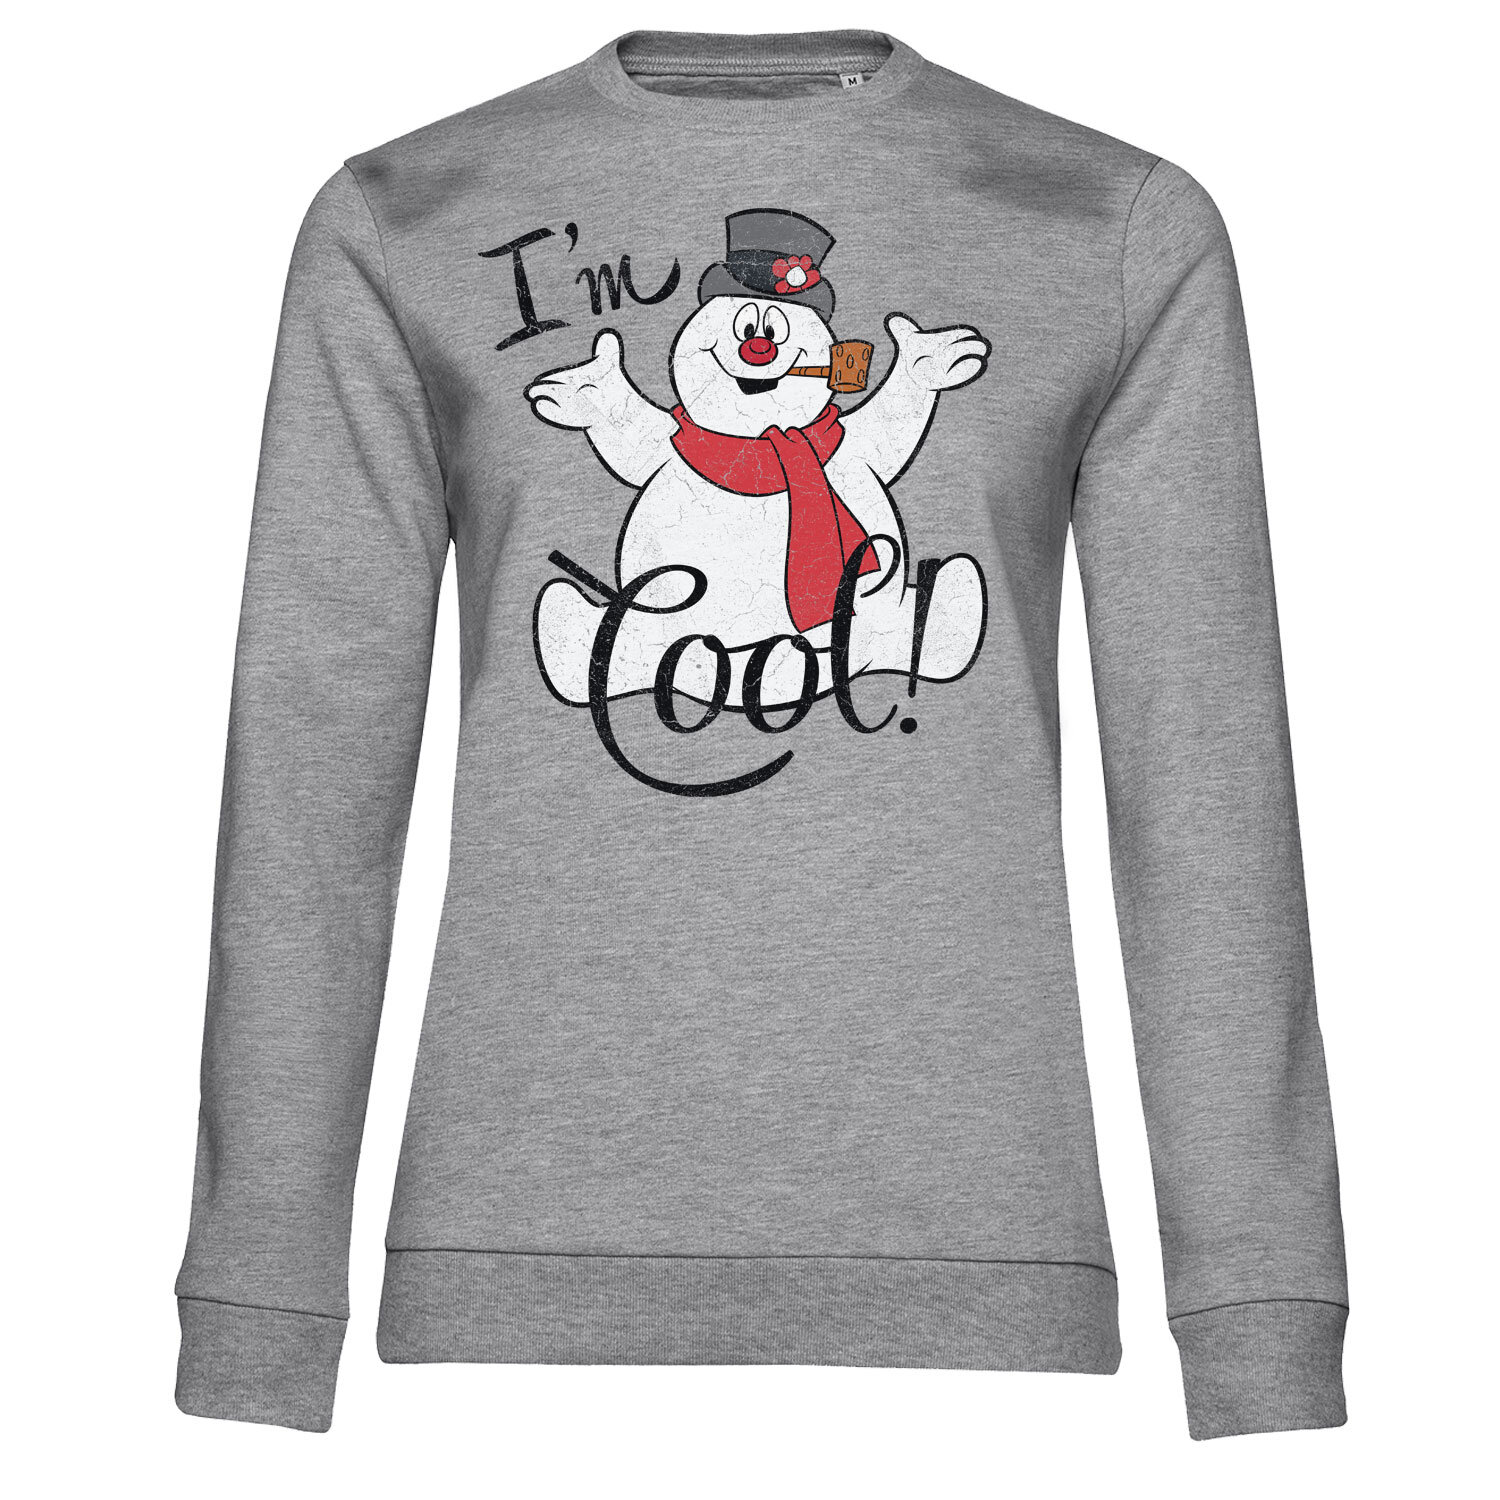 I'm Cool Girly Sweatshirt